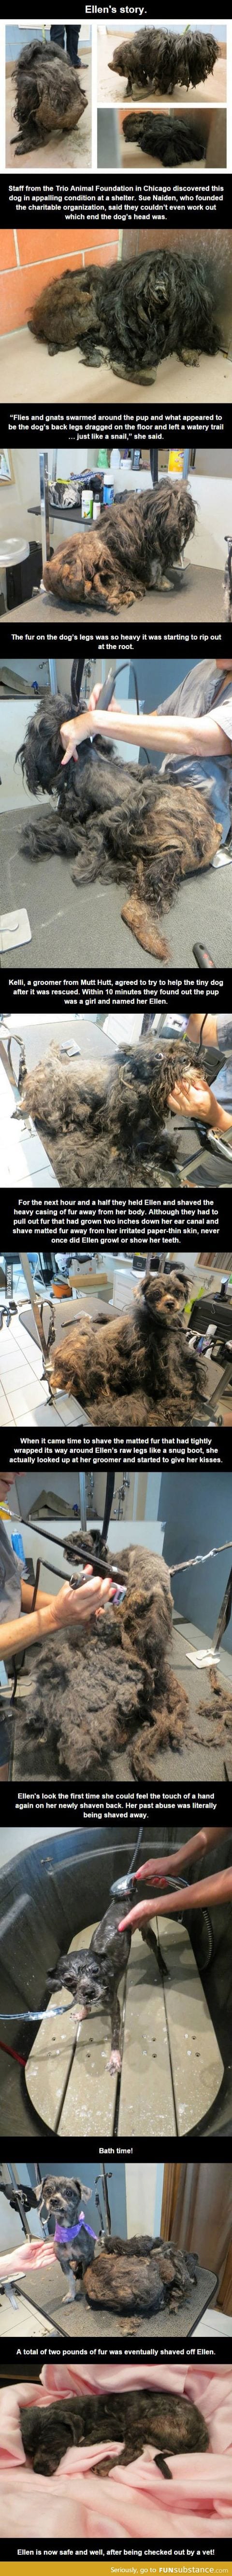 Ellen the hairy dog